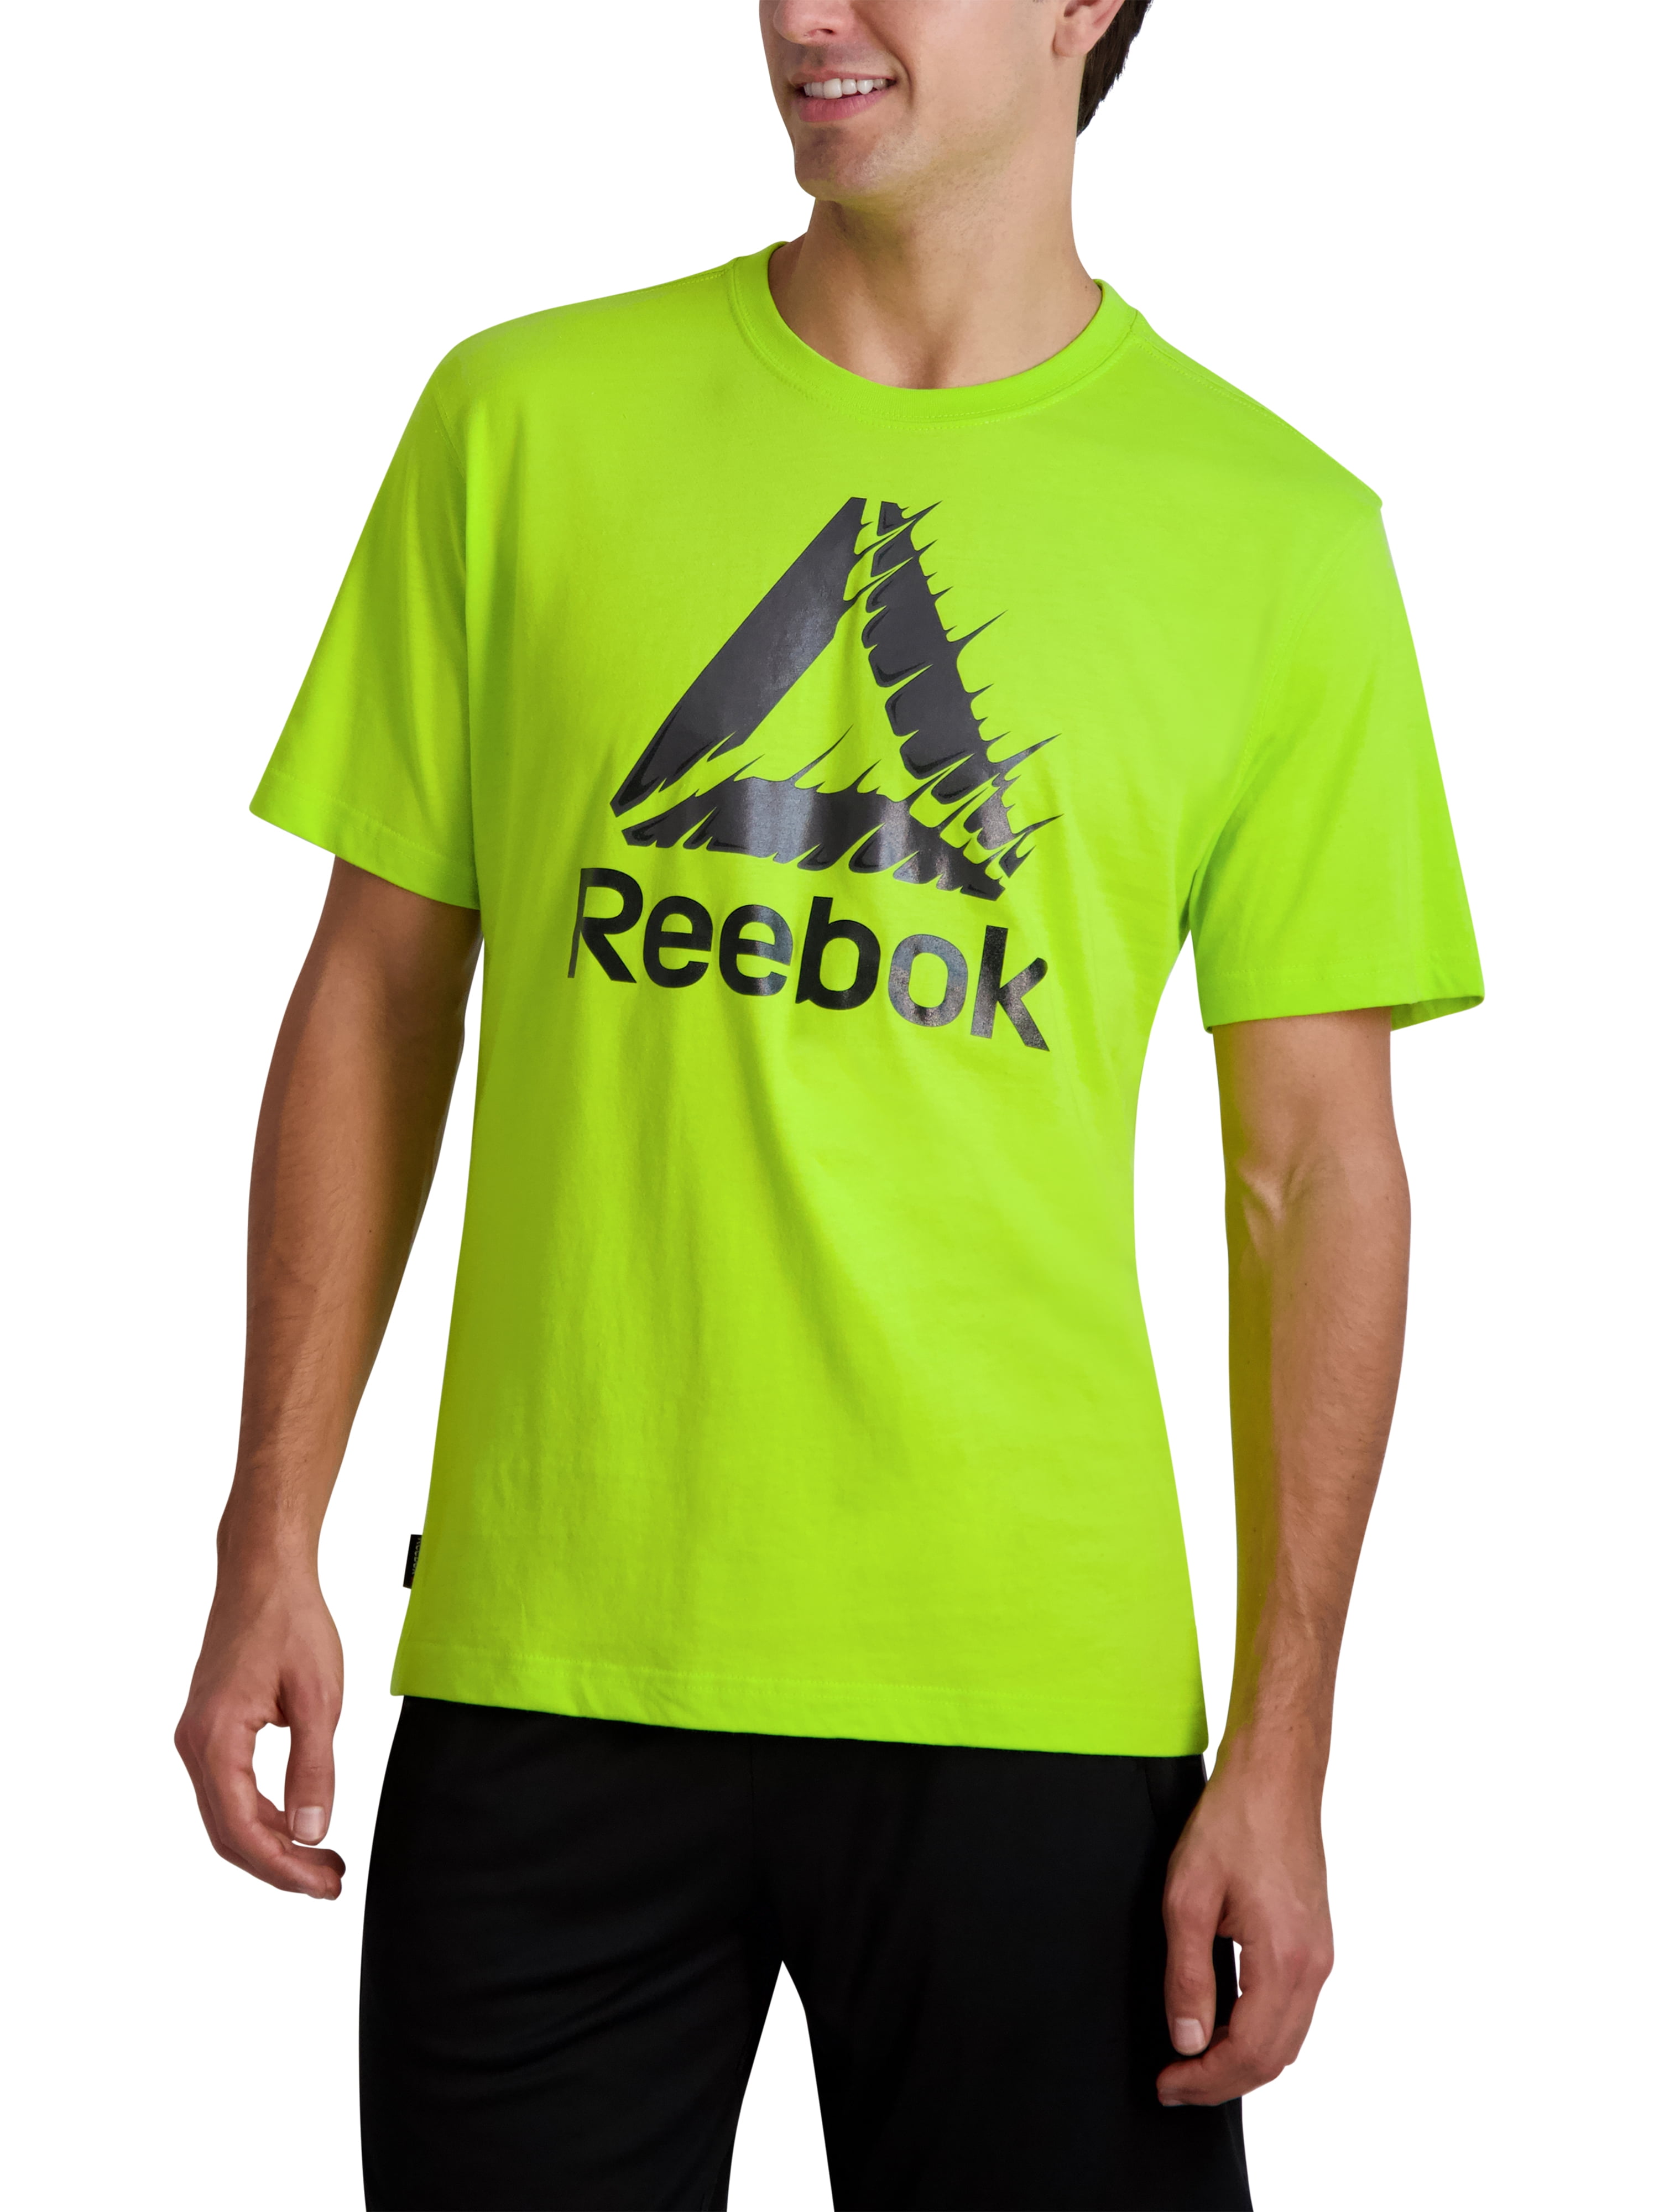 Reebok Men's Shirt - Green - S